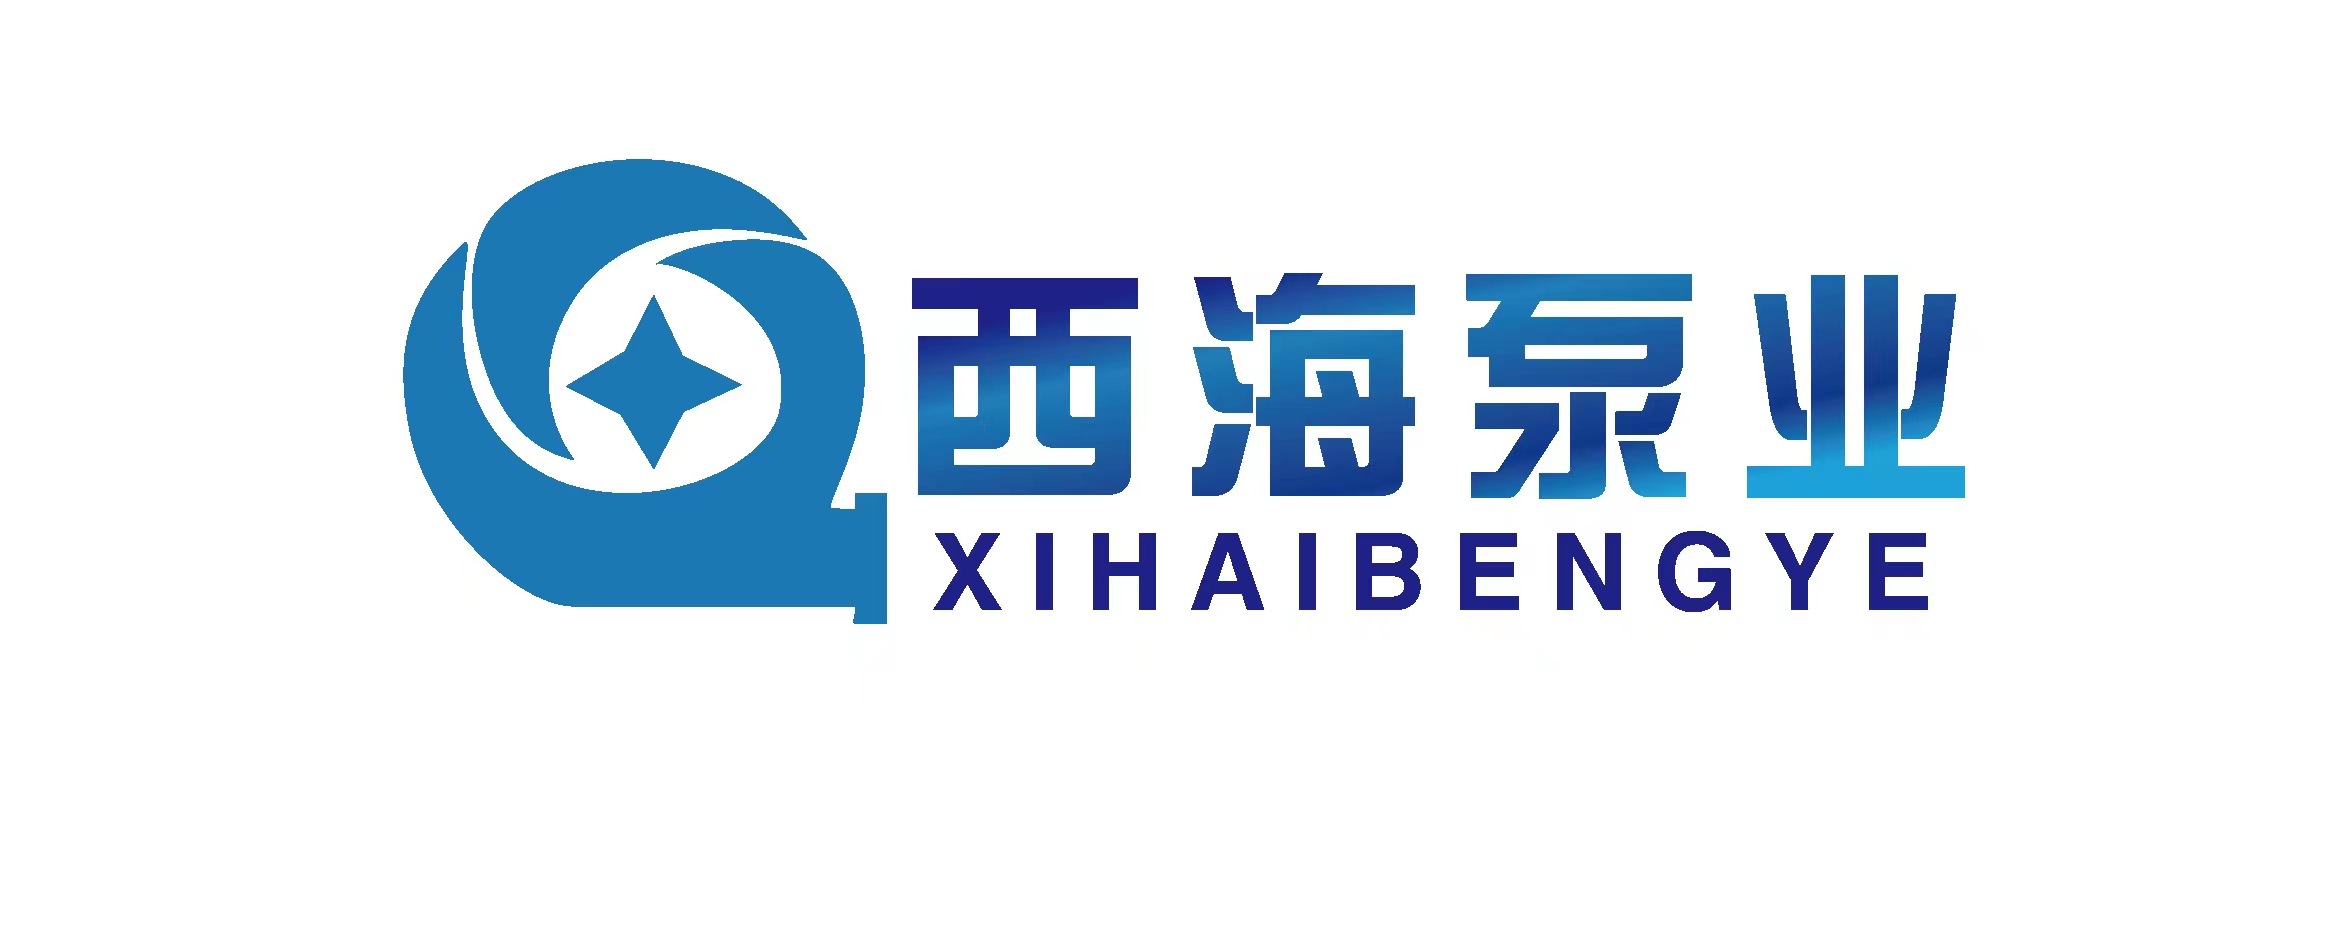 上海西海泵业制造有限公司